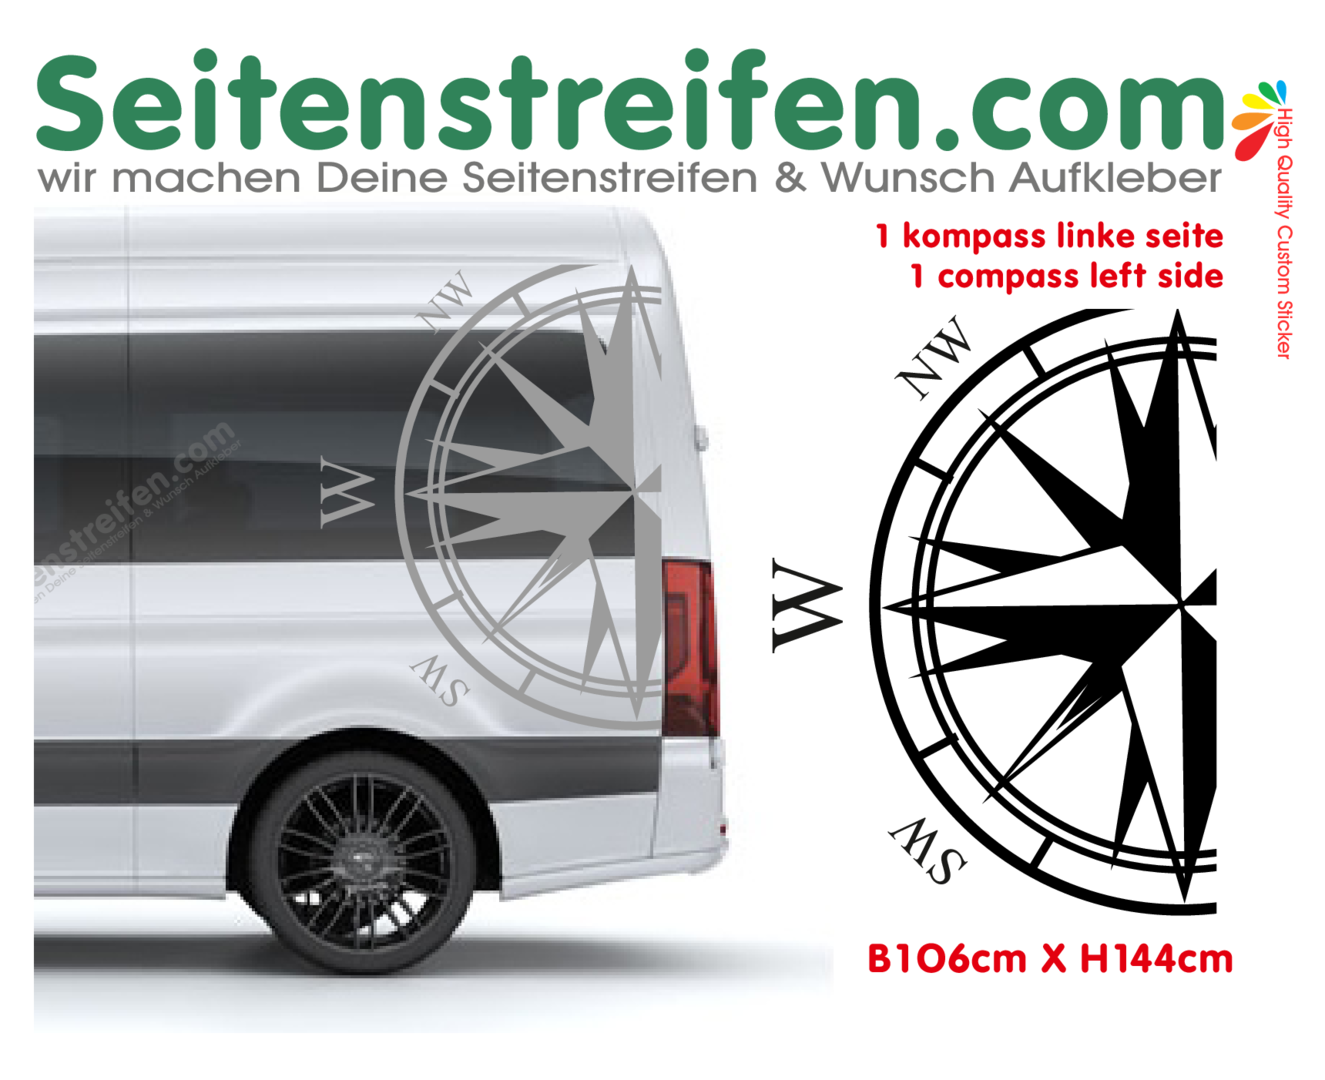 VW Crafter XL Kompass Links Aufkleber - Nr.: 4718